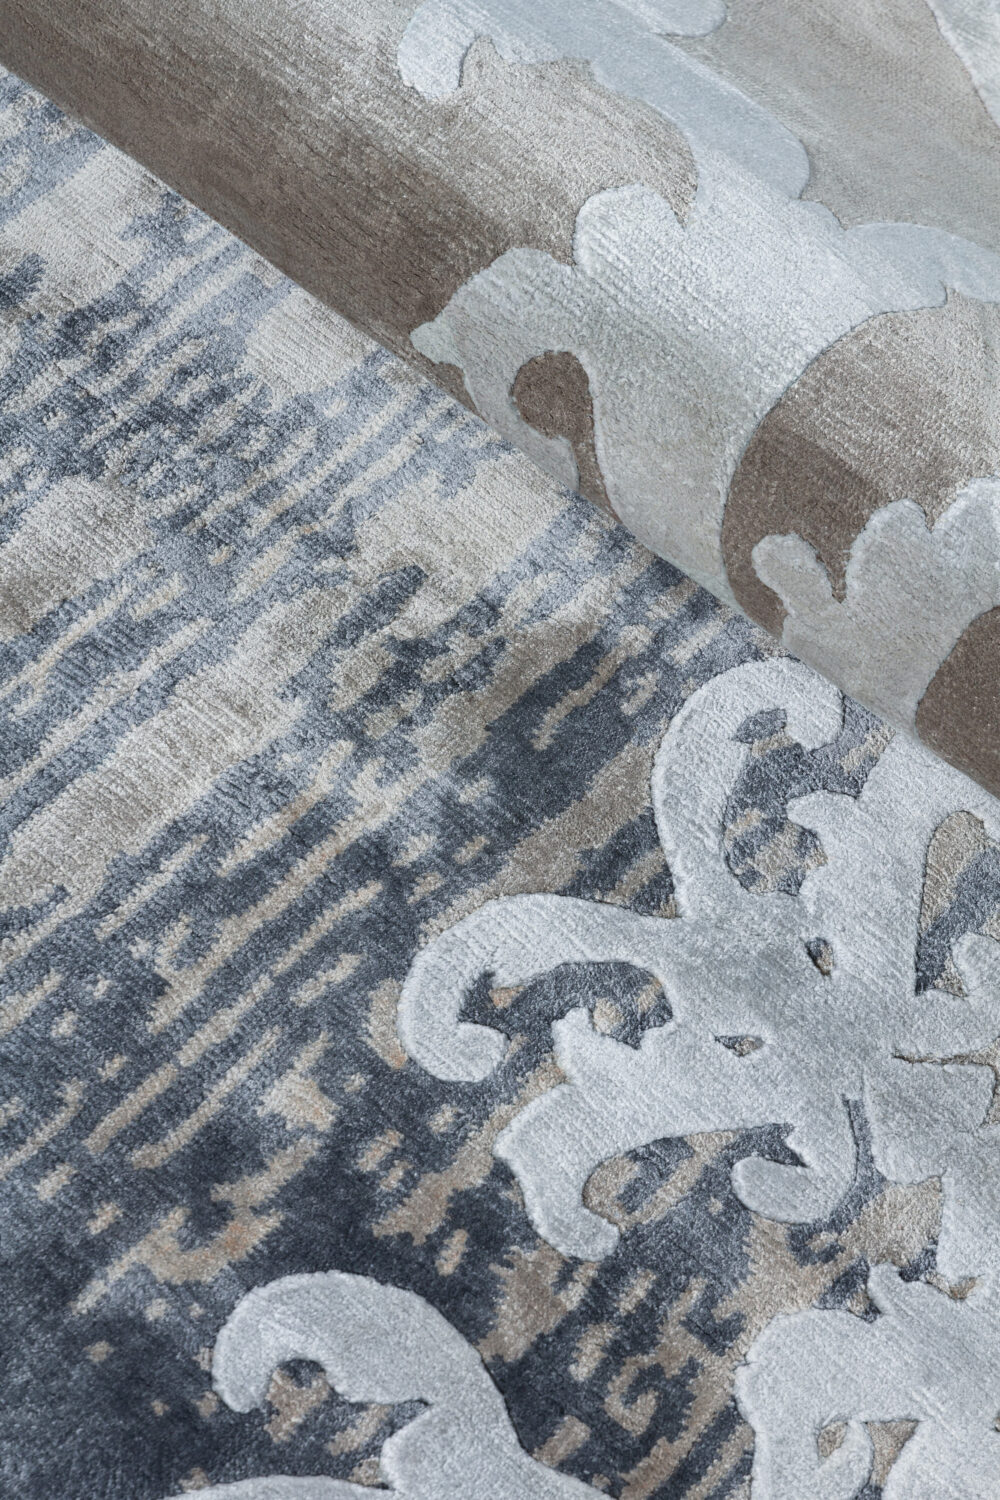 Diseño de lujo y alfombras de alta gama hechas a medida • Marquise